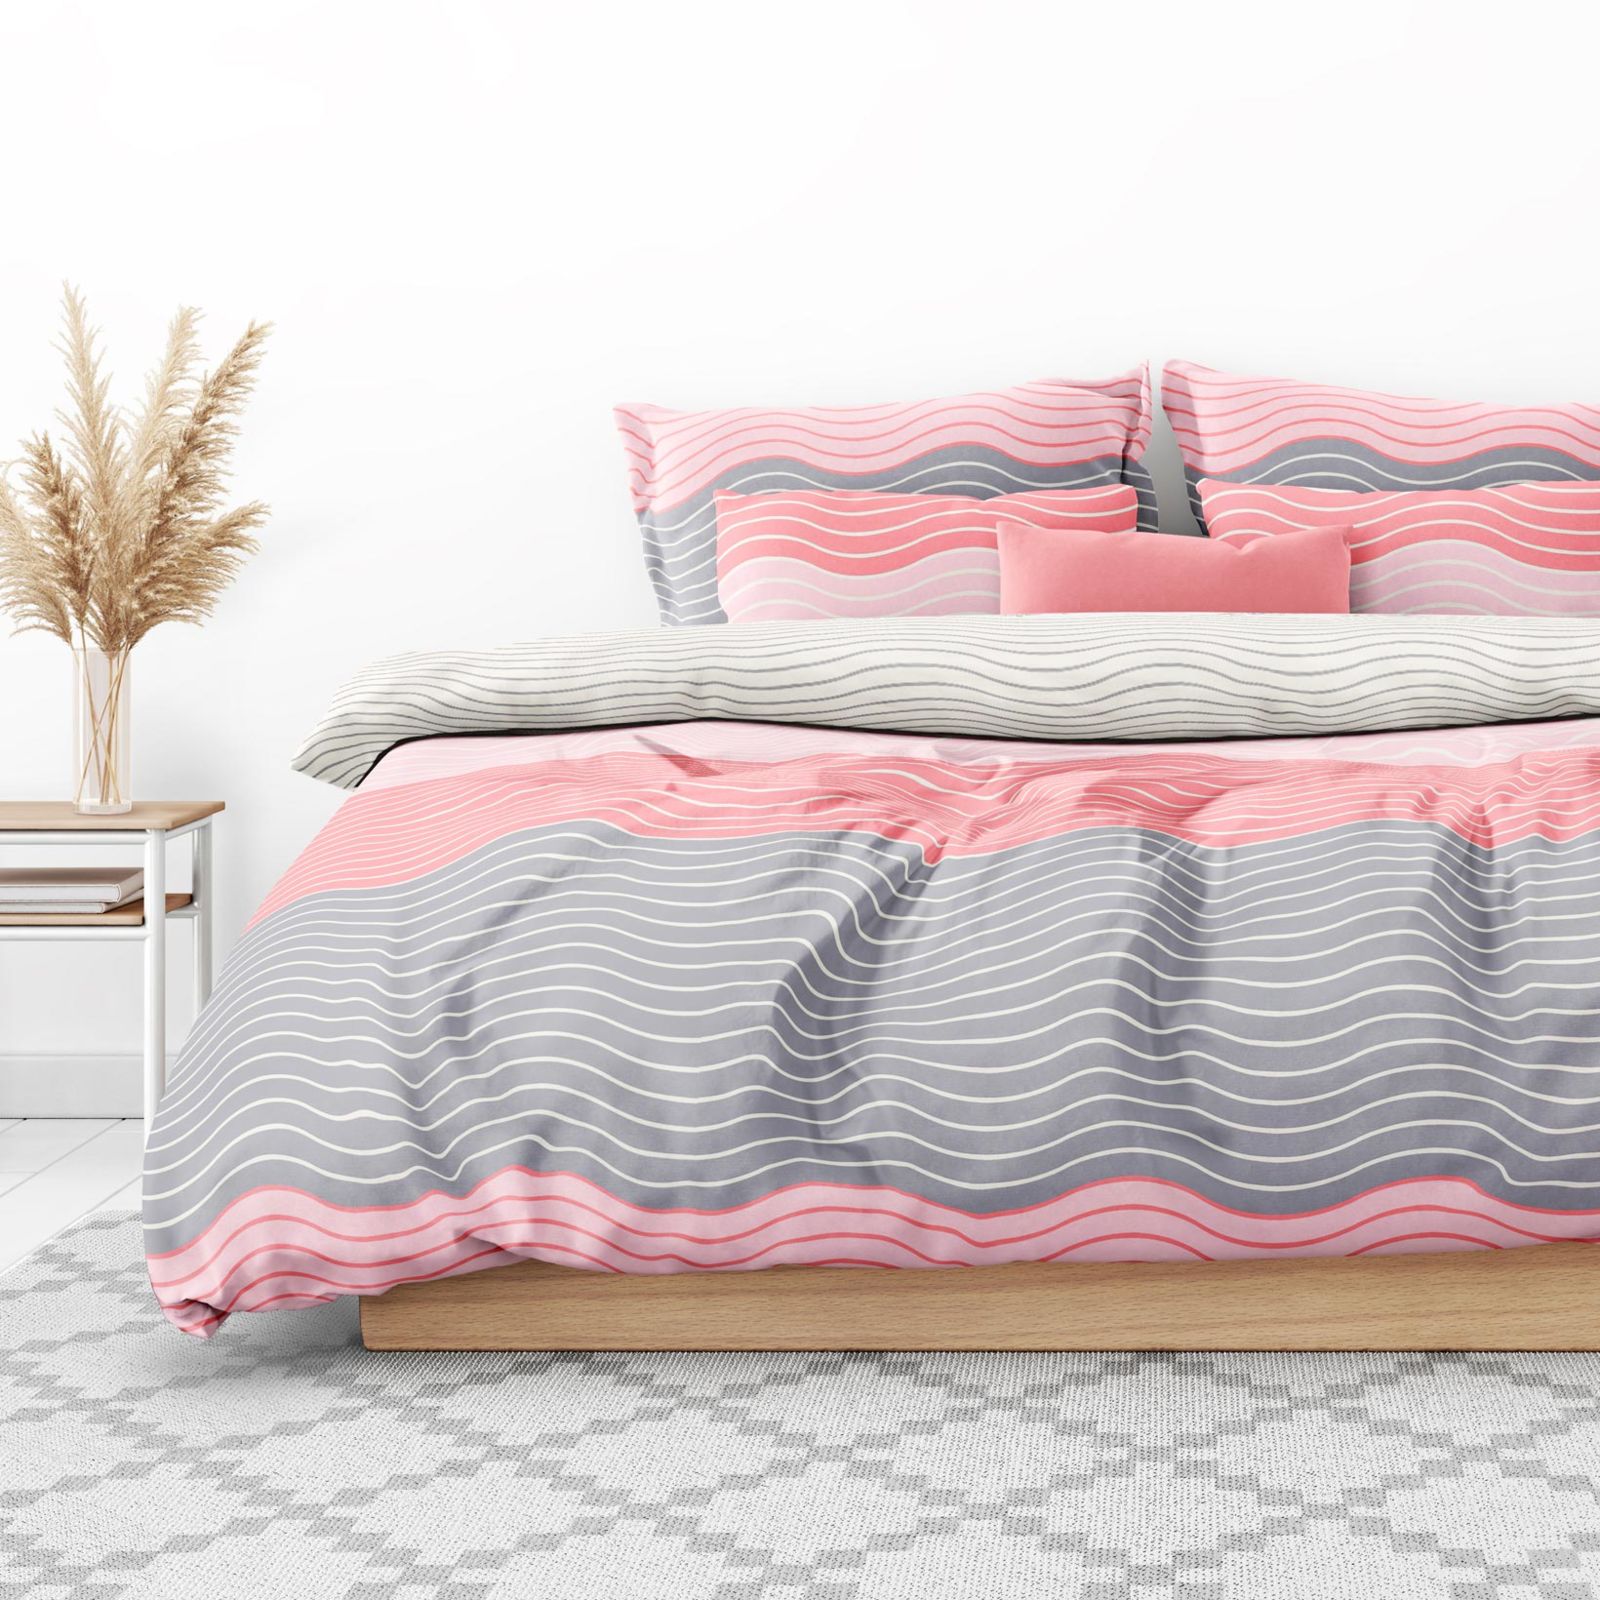 Saténové posteľné obliečky Deluxe - ružové vlnky